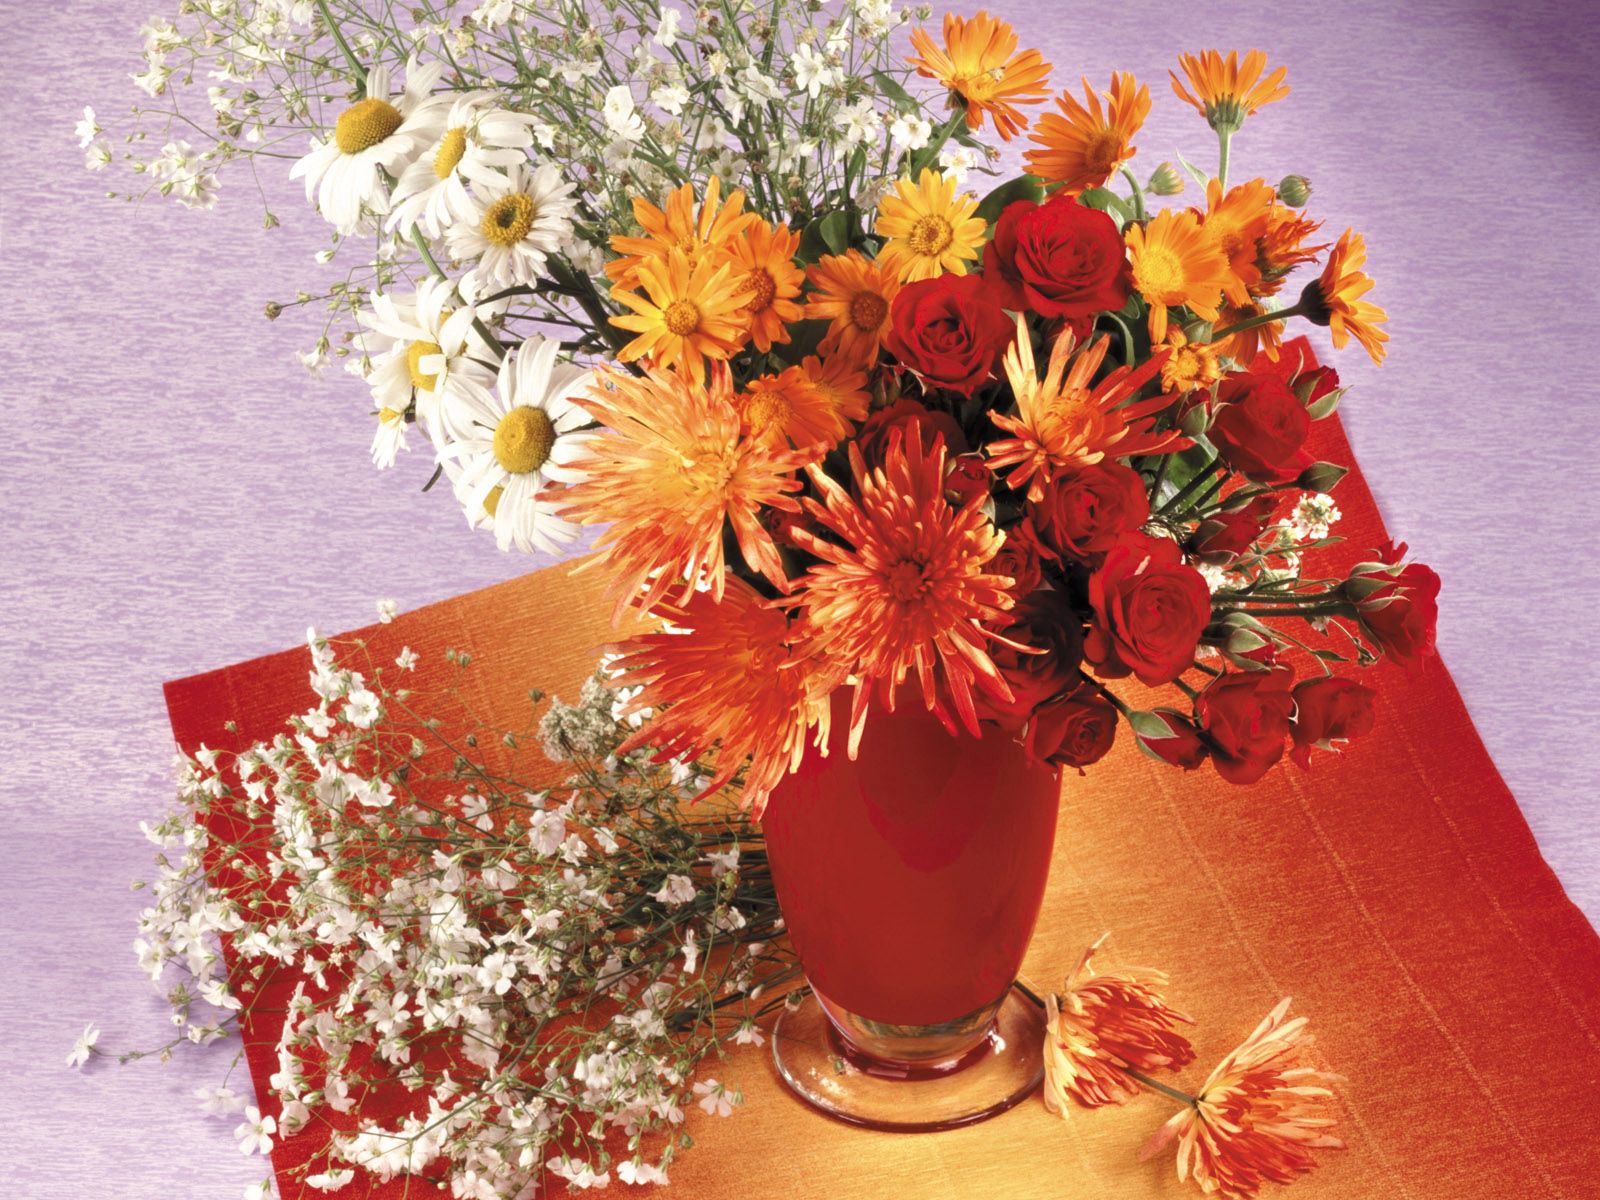 flowers, roses, chrysanthemum, vase, daisies 1080p